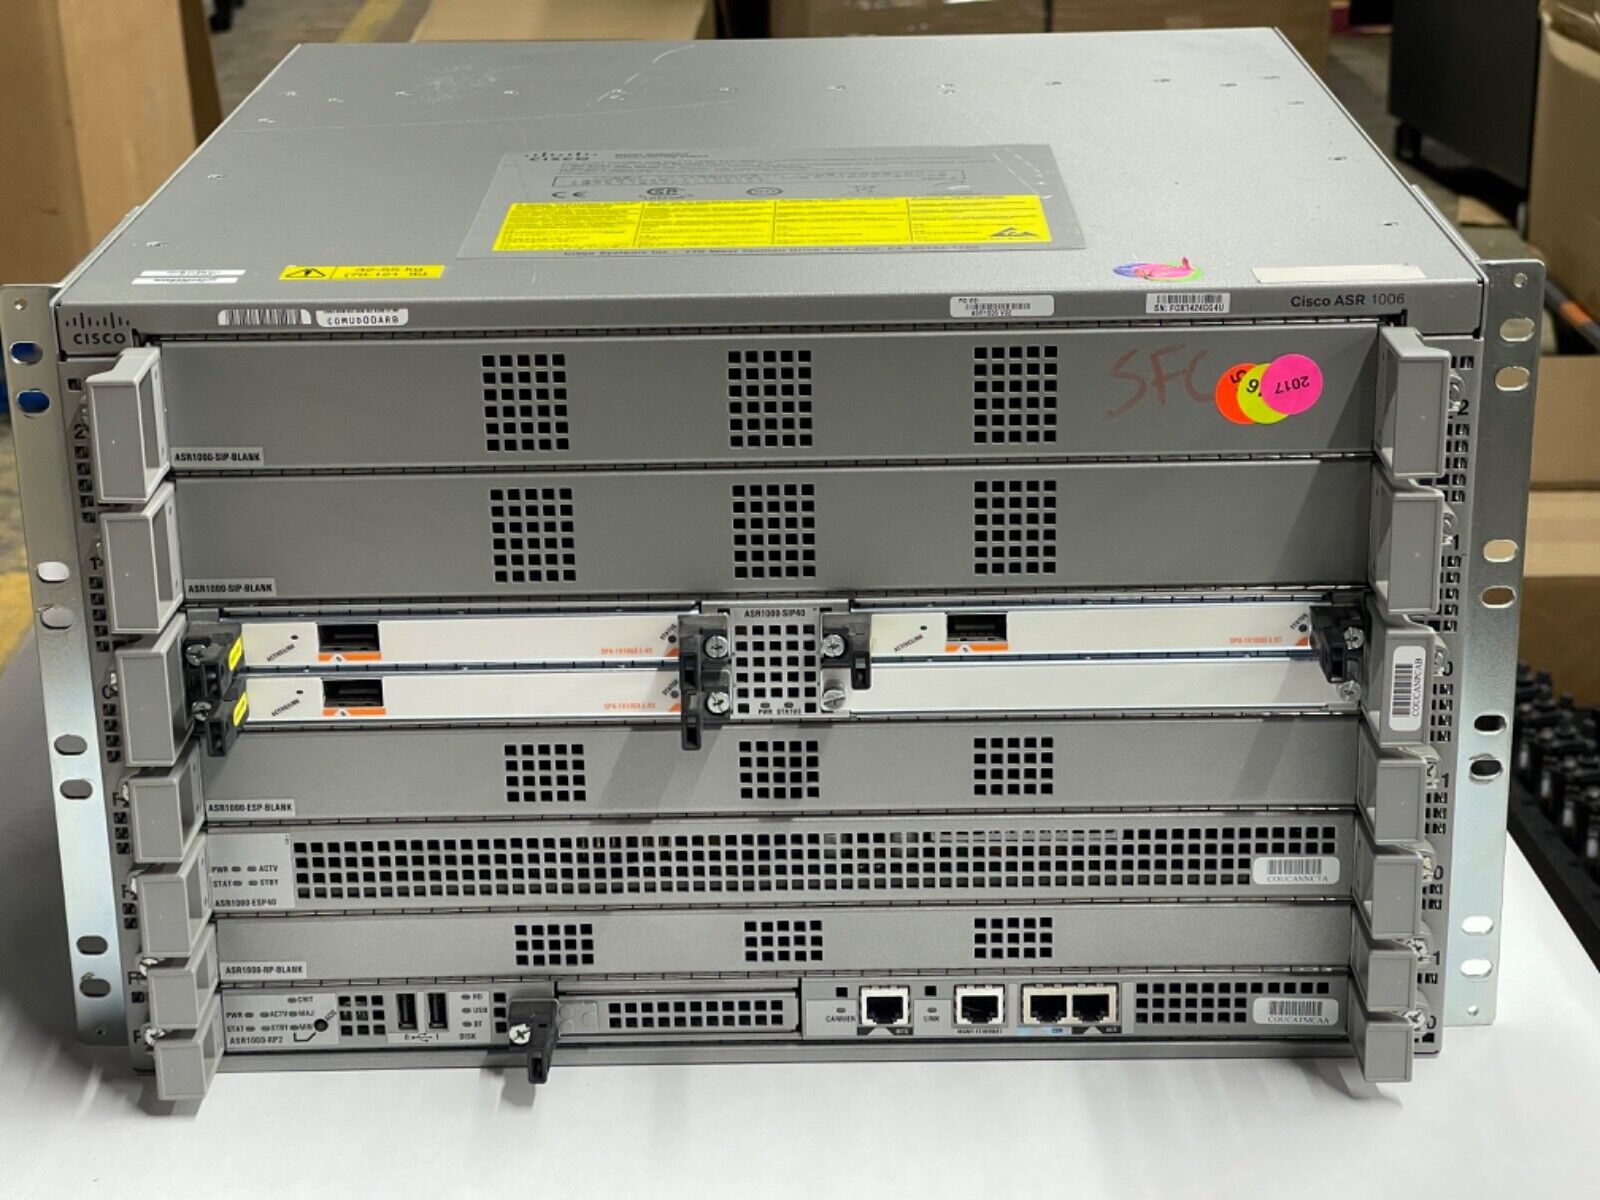 Cisco ASR1006 With: 1x ESP-40, 1x ASR1000-RP2, 3x SPA-1x10GE-L-V2. Dual Adapter